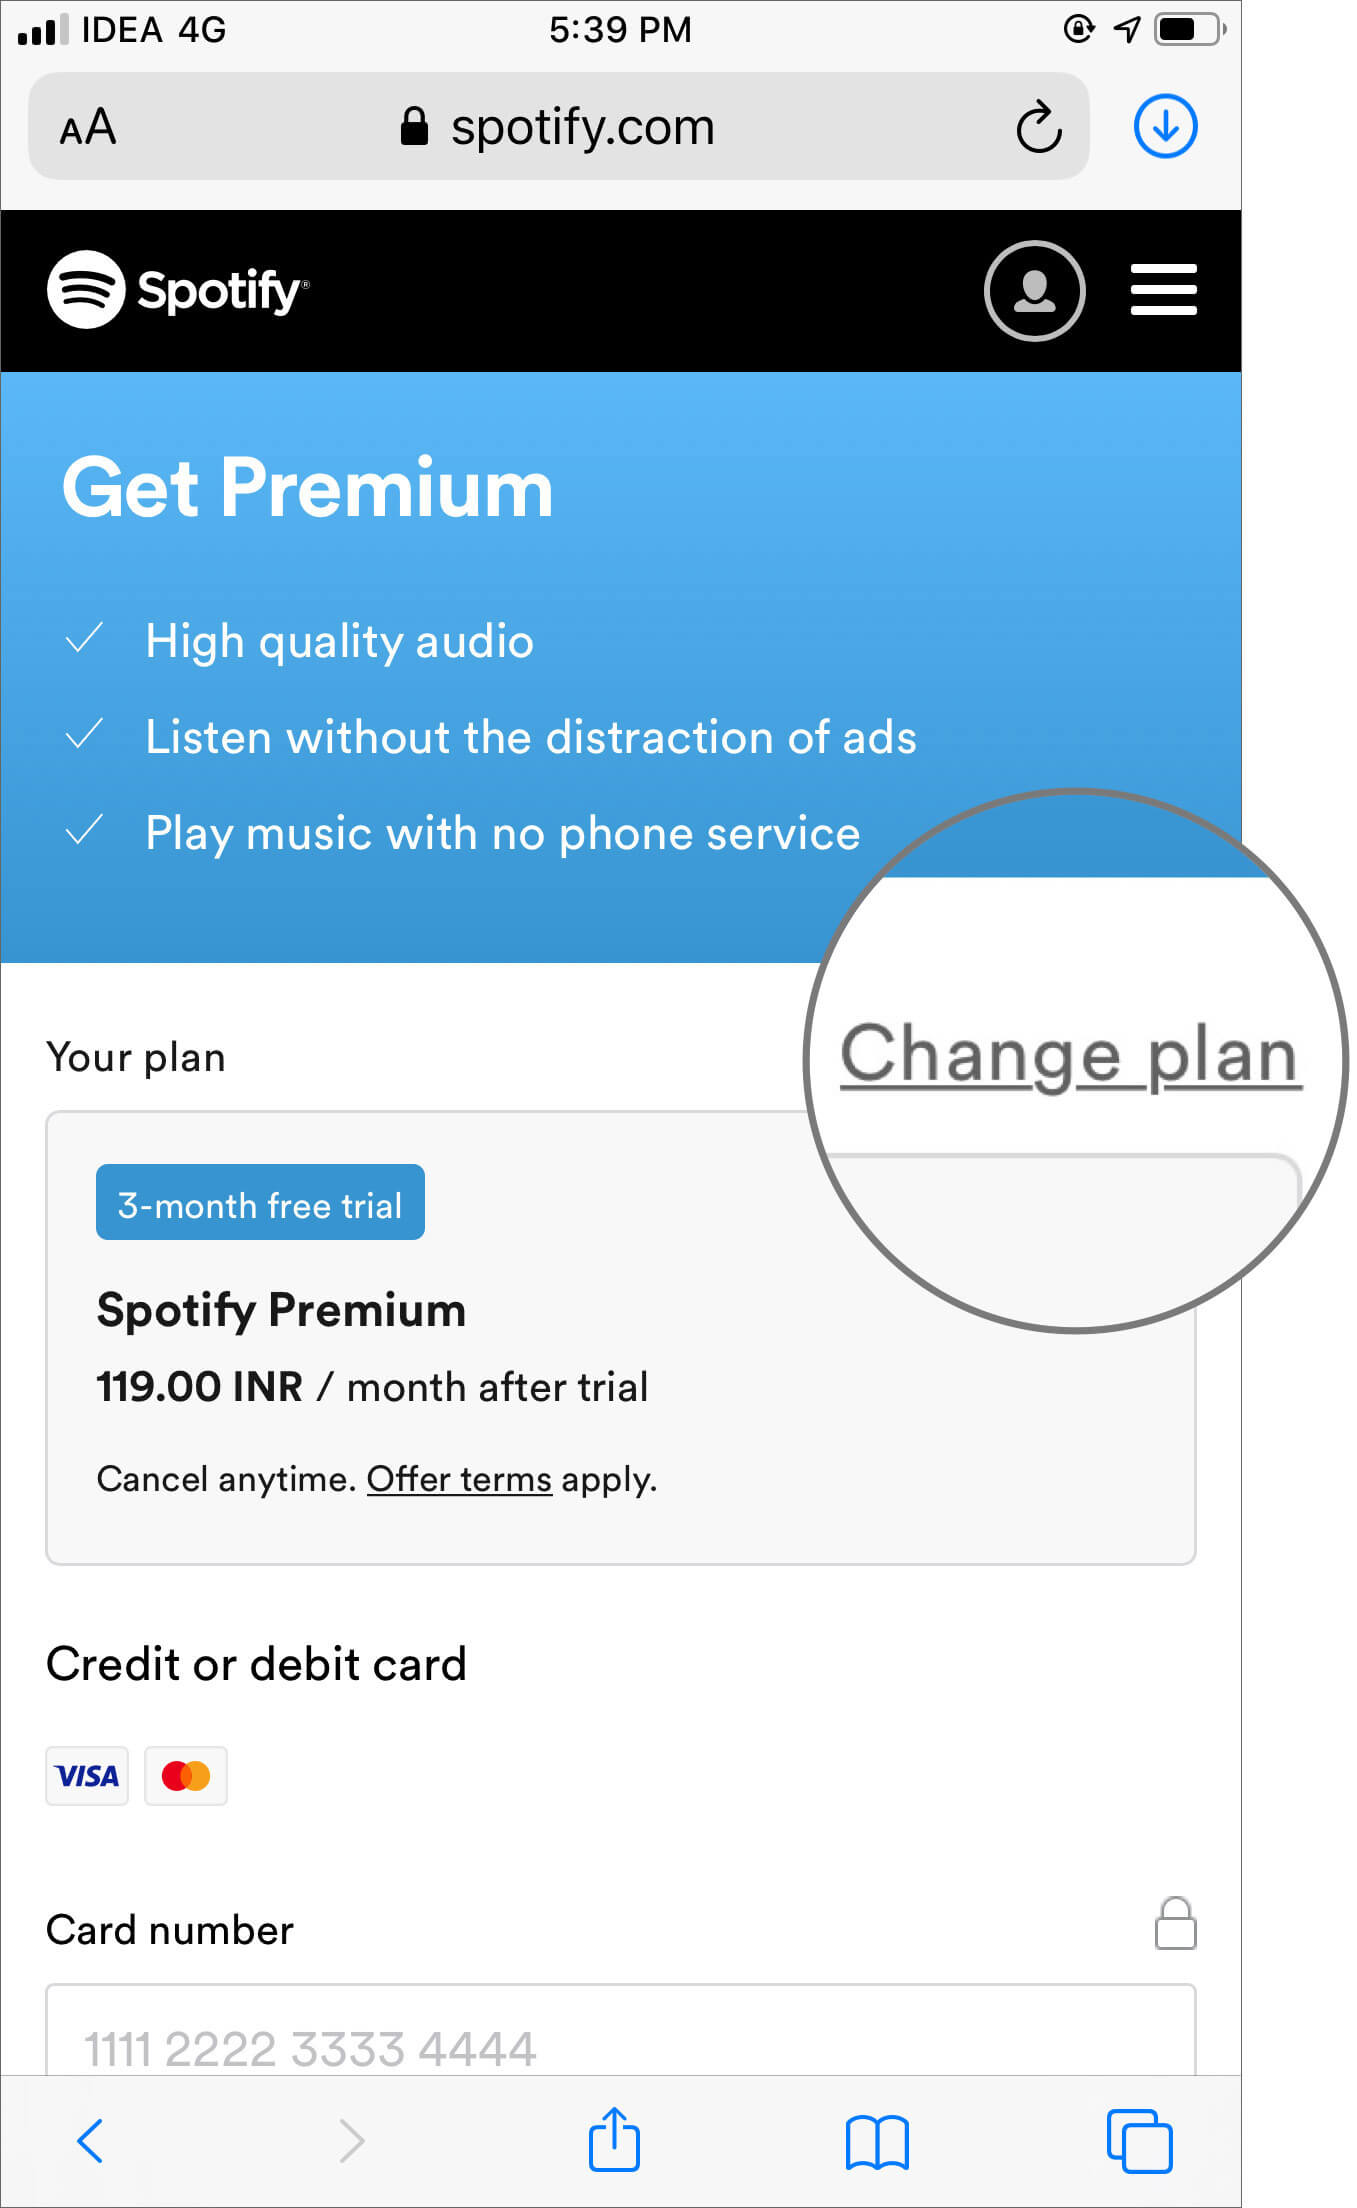 Tap on Change plan to Get Spotify Premium Plan on iPhone